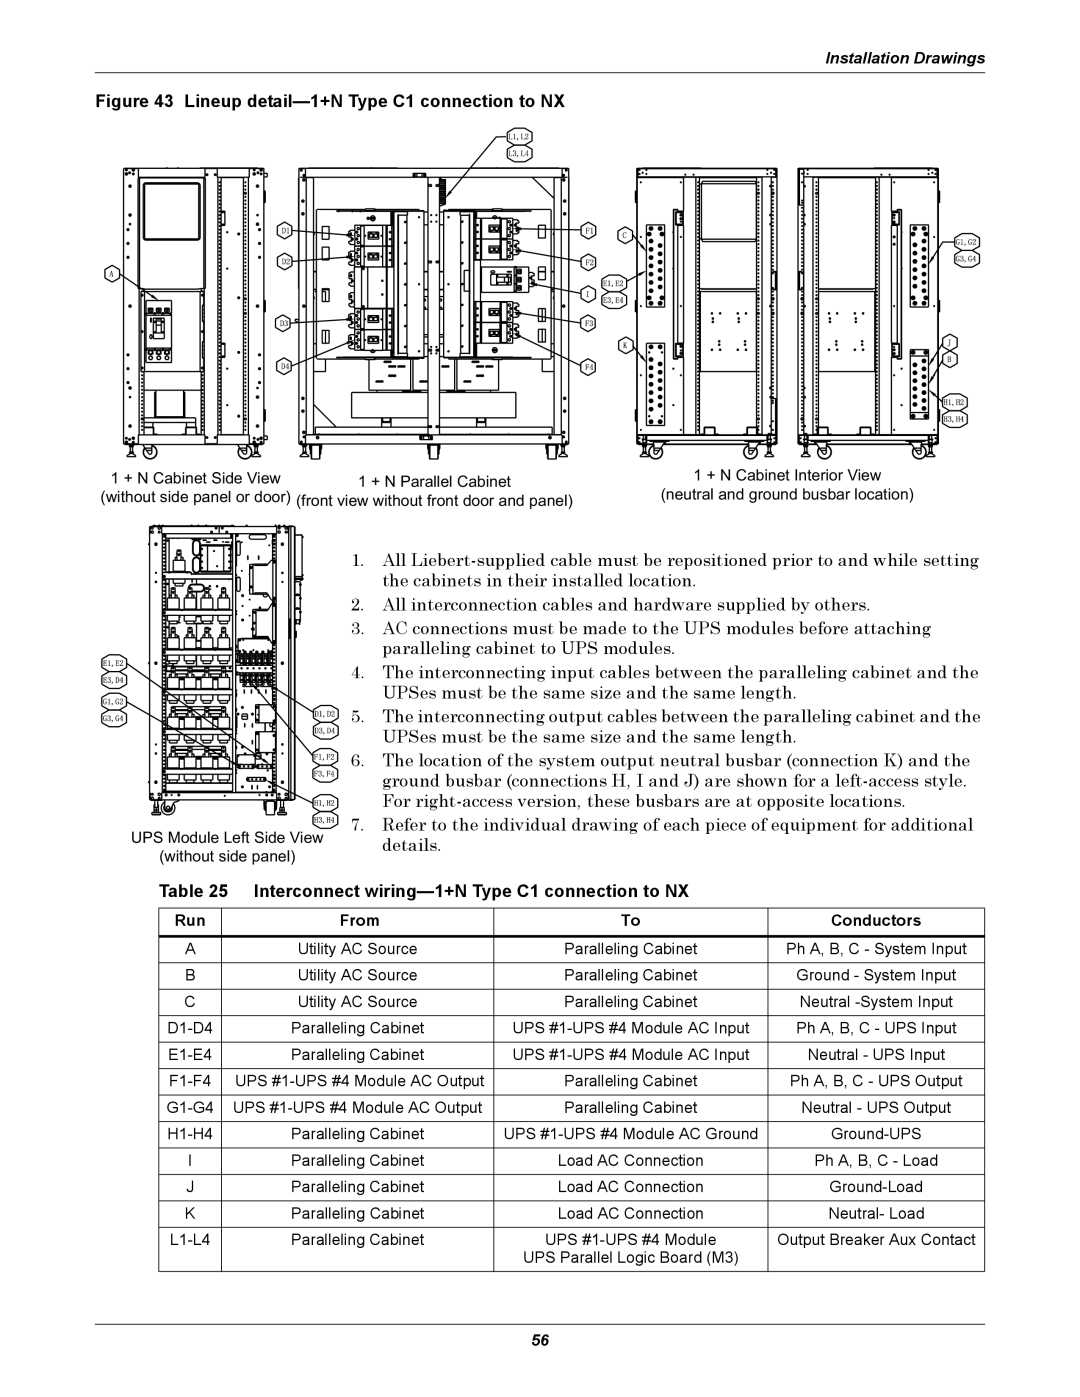 Emerson 10-30kVA, 208V installation manual Installation Drawings 